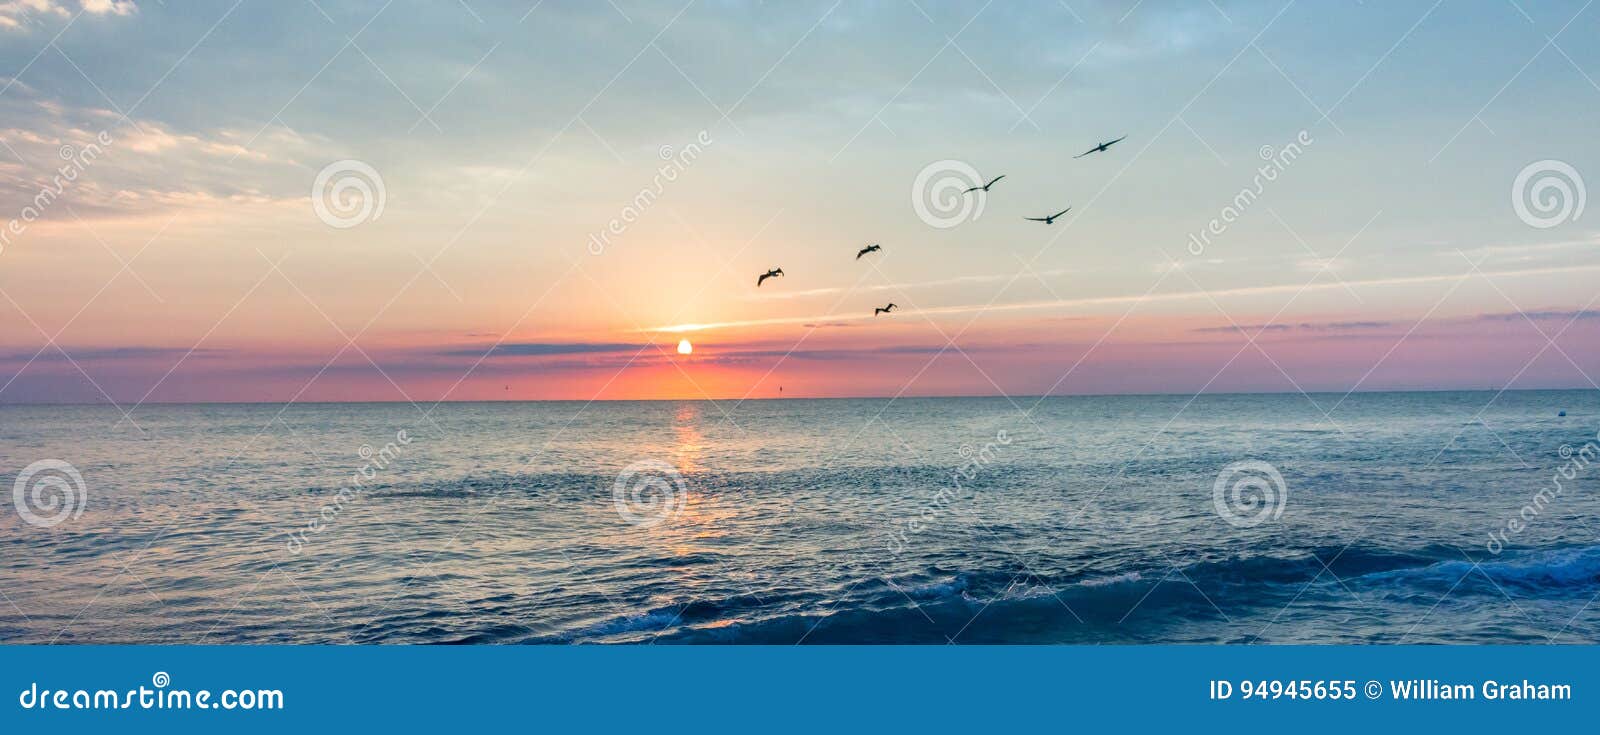 a peaceful sunrise on the beach